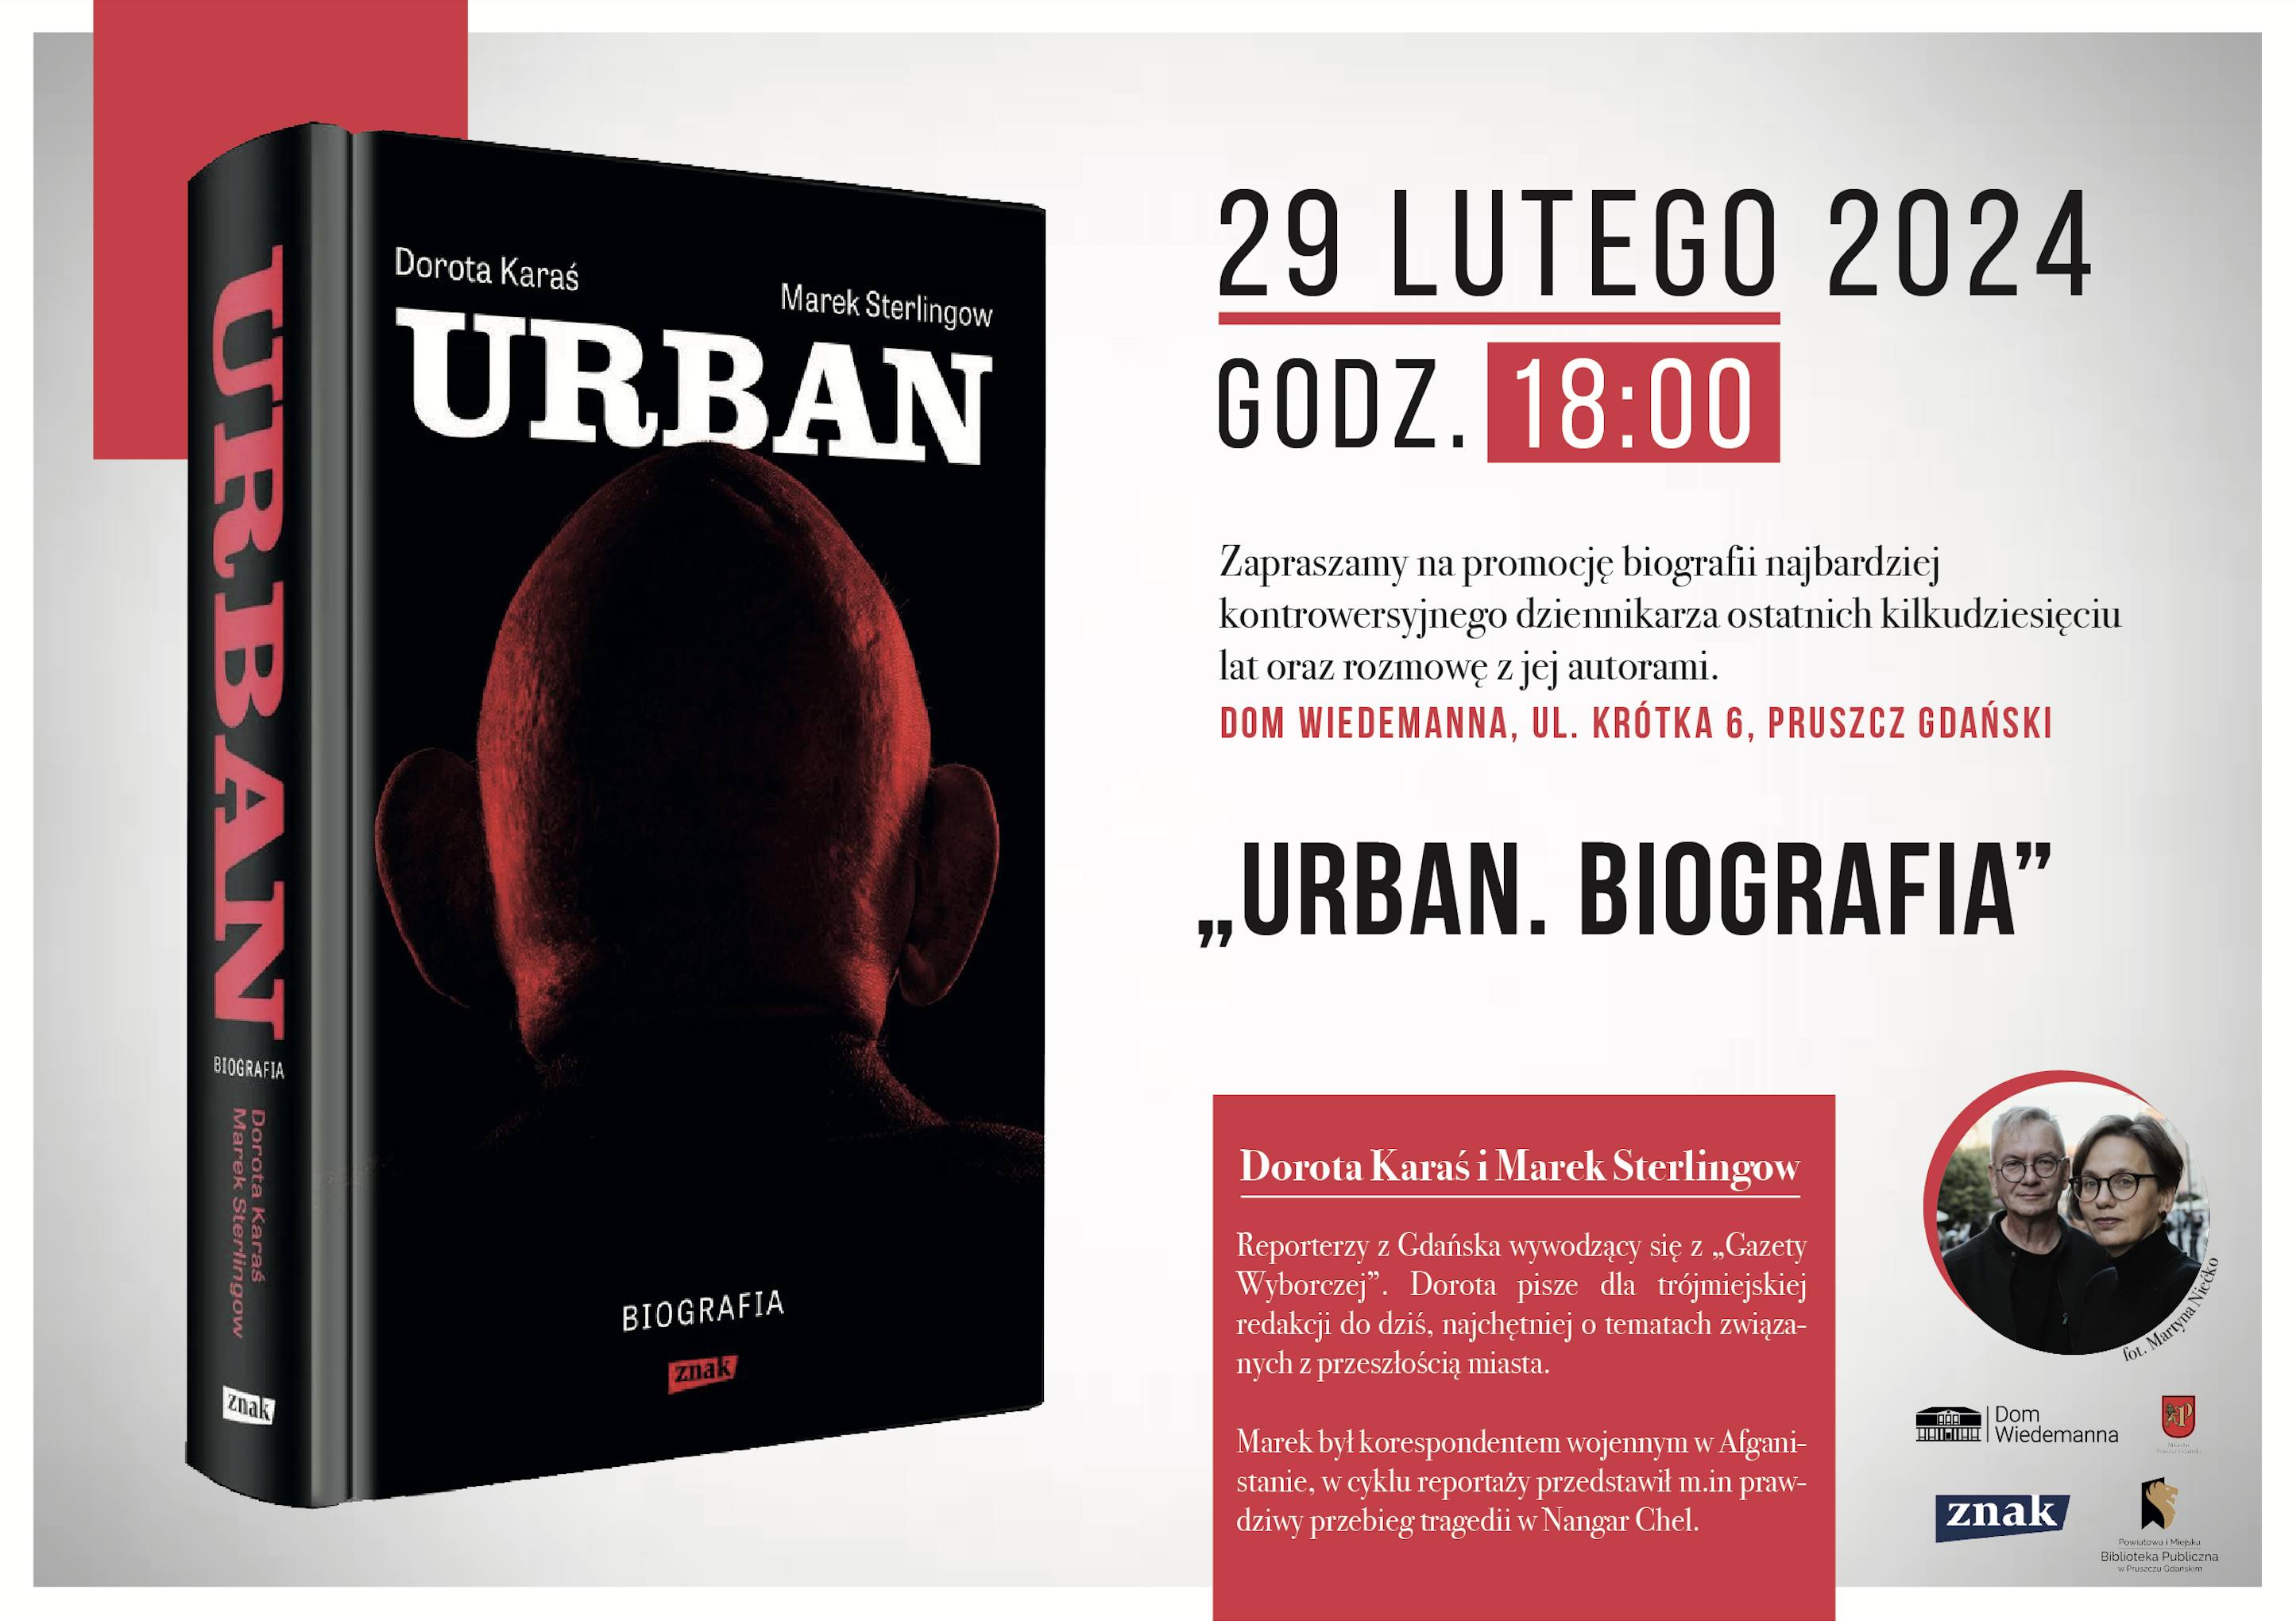 Plakat przestawiający okładkę książki "Urban. Biografia" autorstwa Doroty Karaś i Marka Sterlingowa